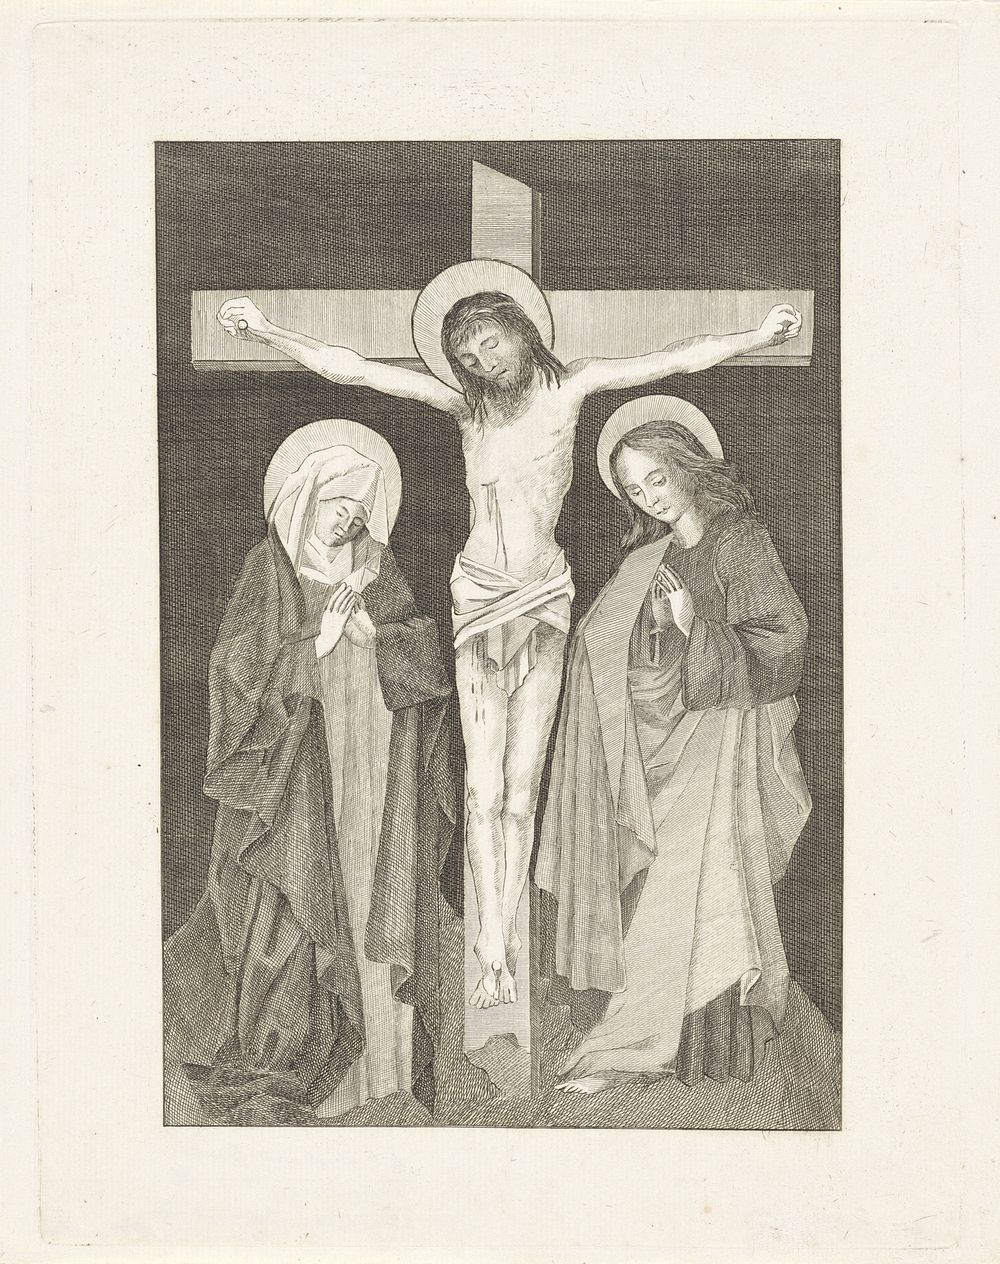 Christus aan het kruis, aan weerszijden Maria en Johannes (c. 1700 - c. 1799) by anonymous and Desiderius Erasmus